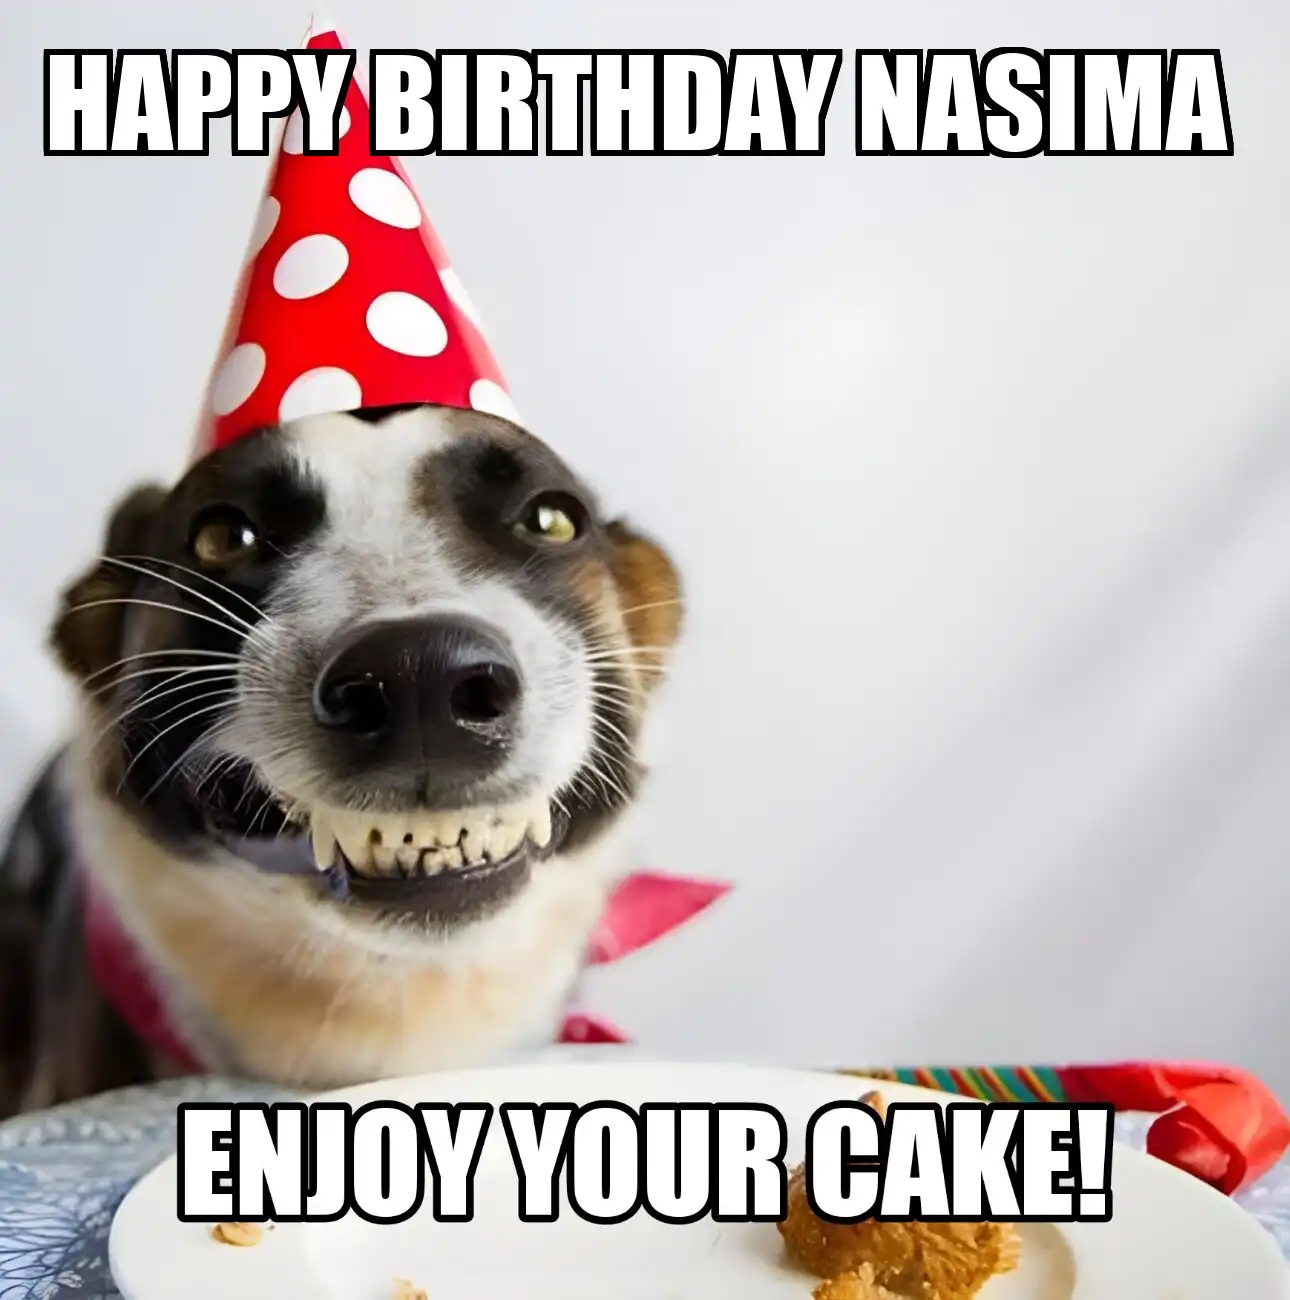 Happy Birthday Nasima Enjoy Your Cake Dog Meme